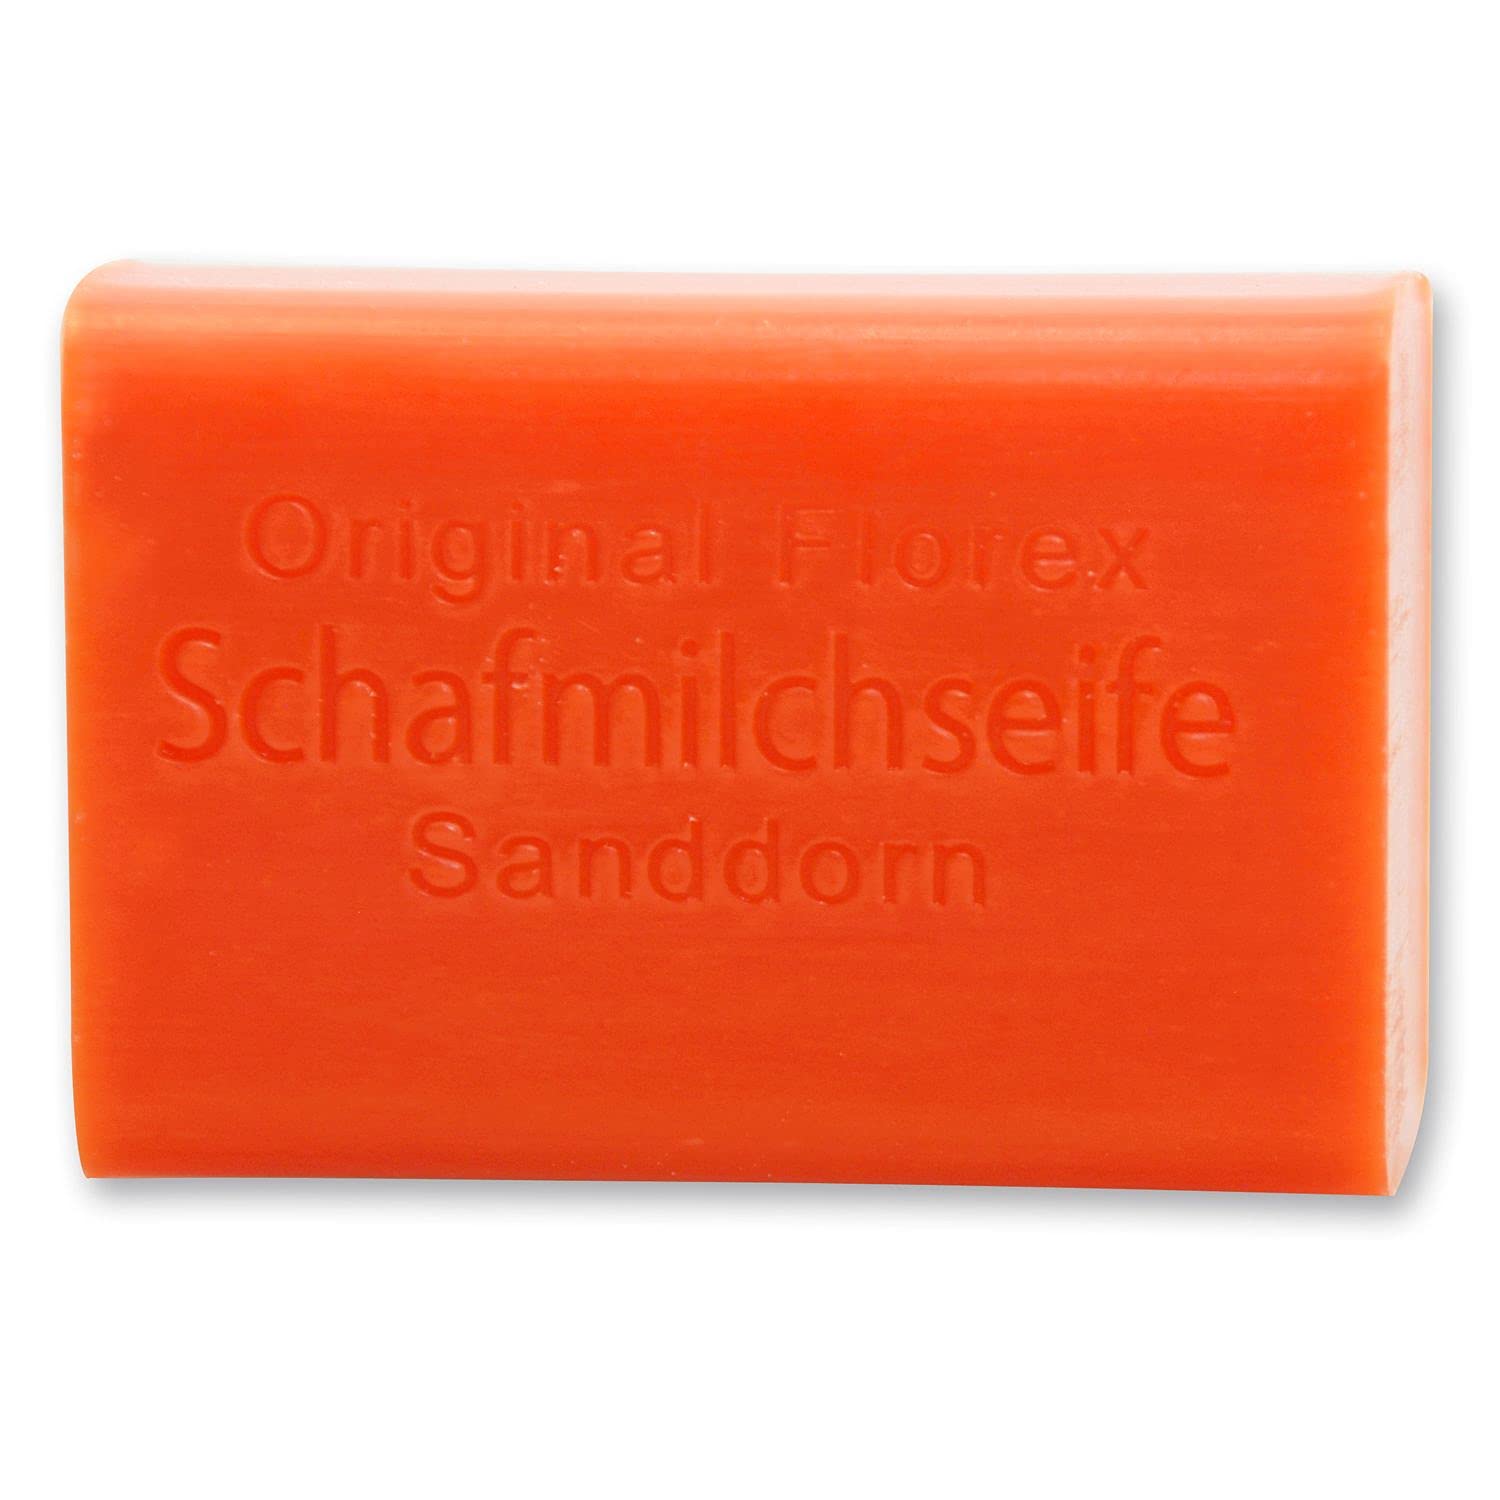 Florex Schafmilchseife - Sanddorn - mit wertvollen duftenden Sanddornölen reinigt die Haut pflegt seidenweich 100 g